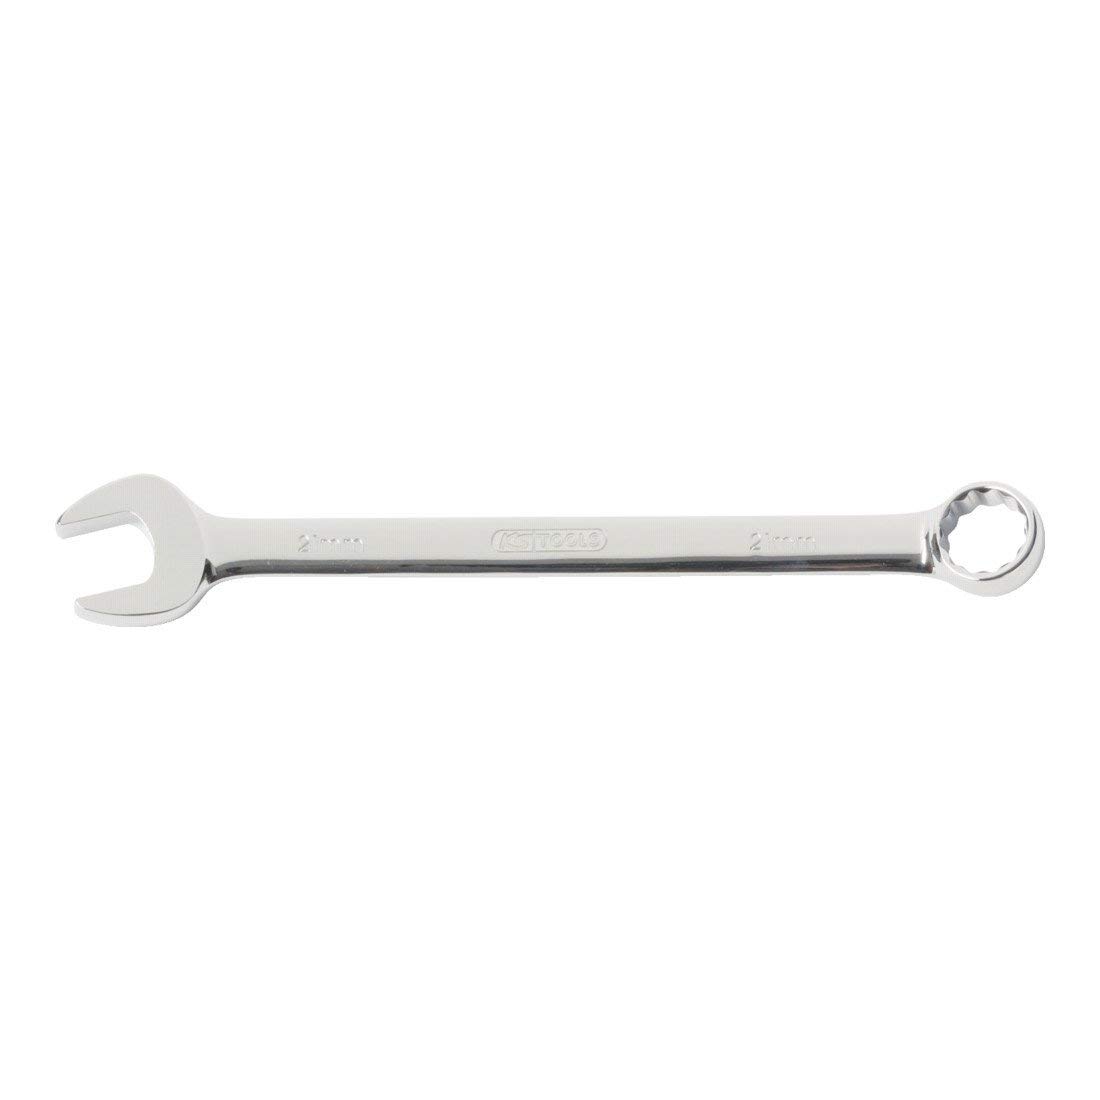 KS Tools Ring-Maul-Schlüssel 7 mm DIN 3113 133,75 mmL,verchromt, hochglanz poliert von KS Tools